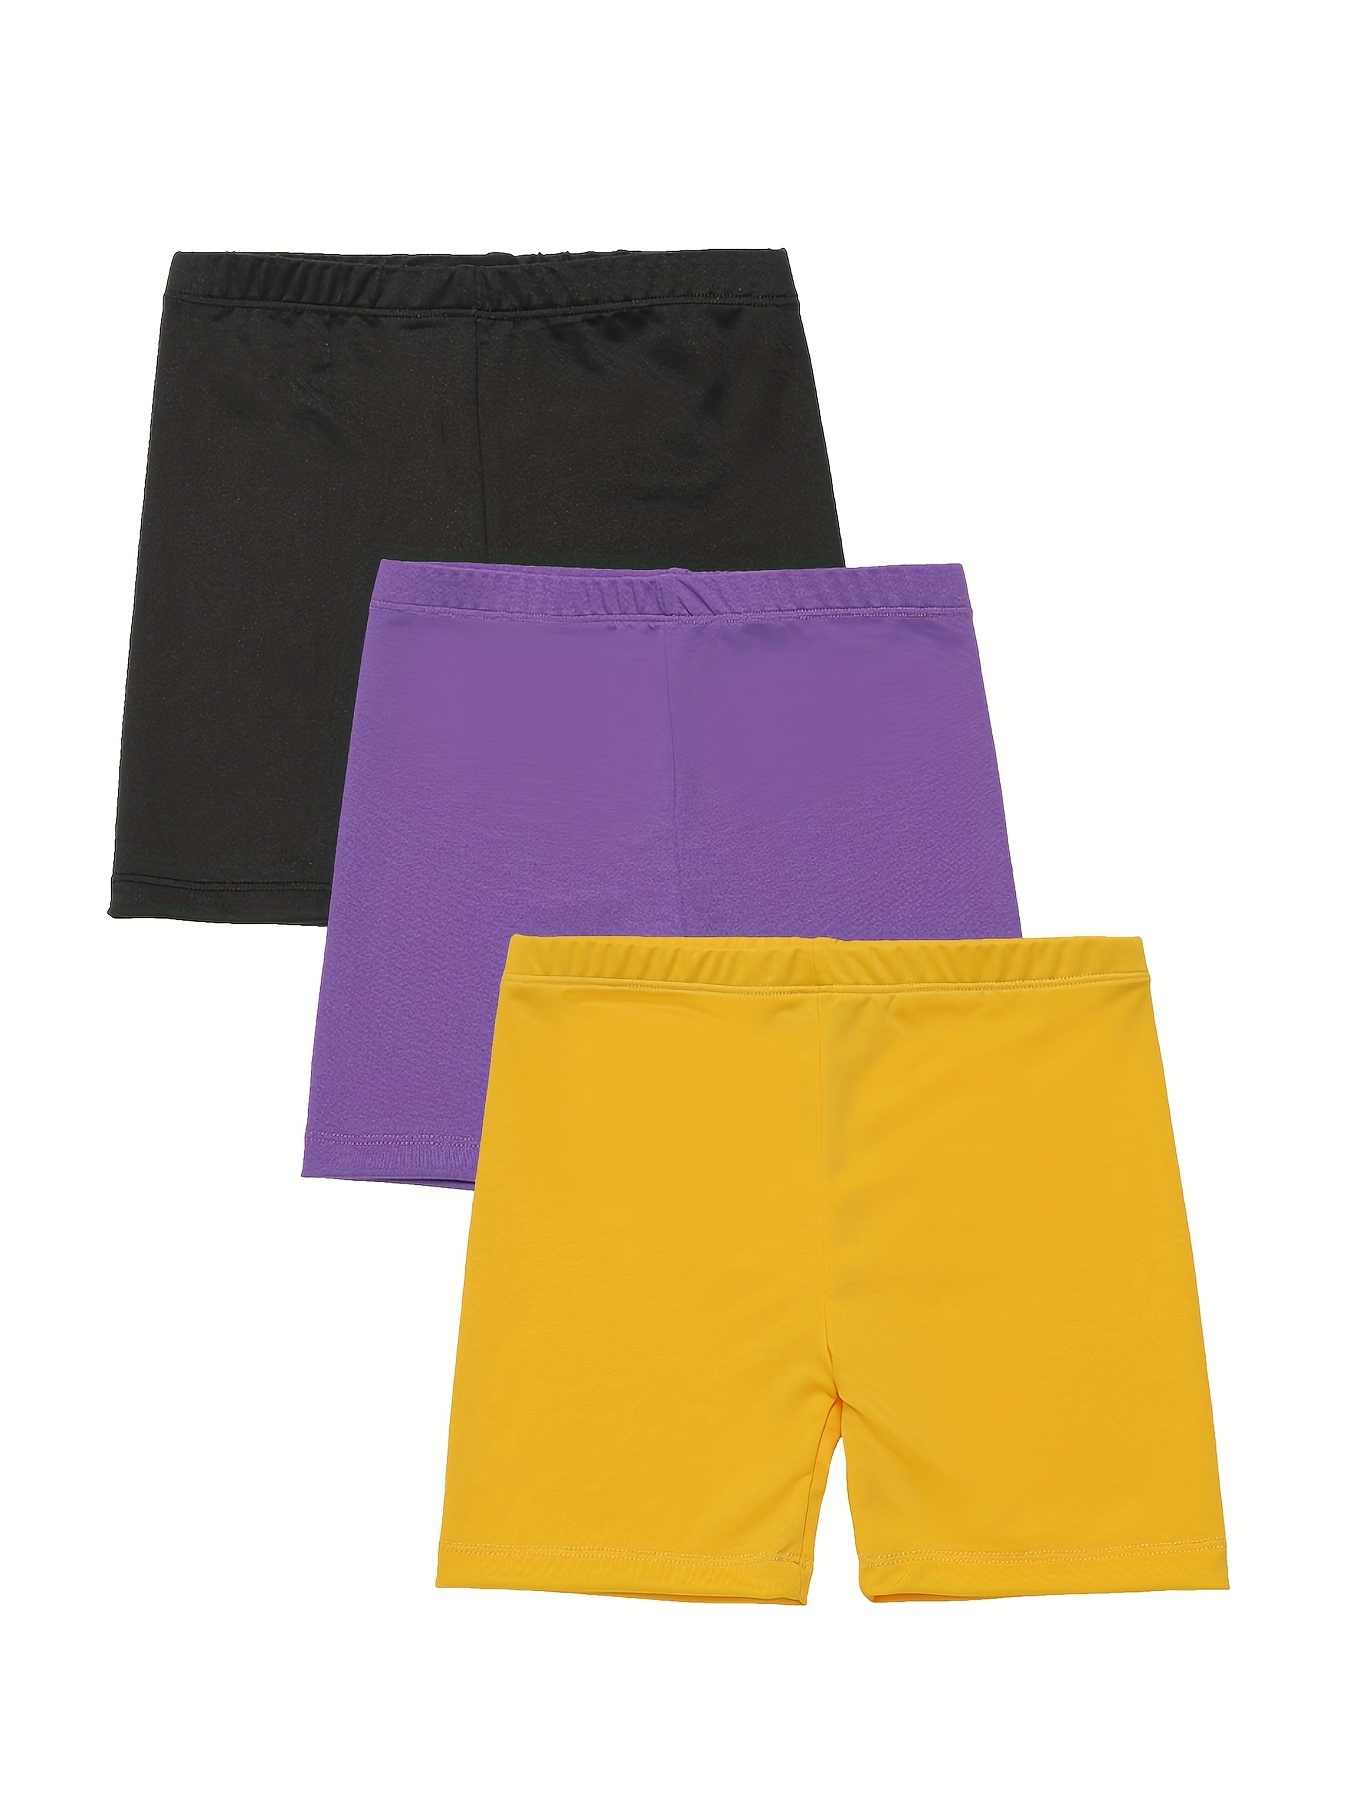 Crianças Modal Shorts De Algodão Lace Leggings Curtos Para Calças